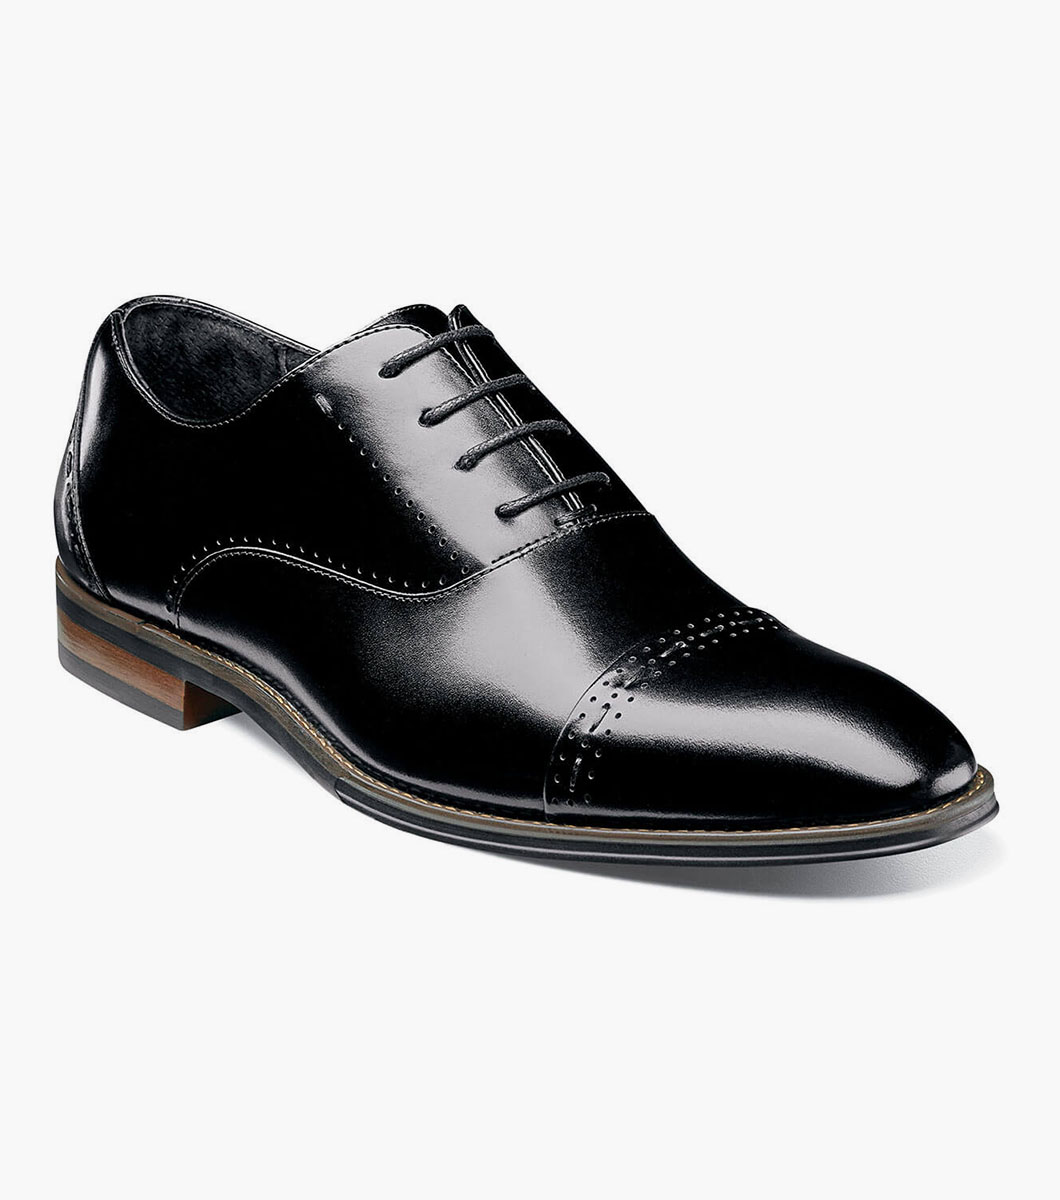 Barris Cap Toe Oxford Men’s Dress Shoes | Stacyadams.com